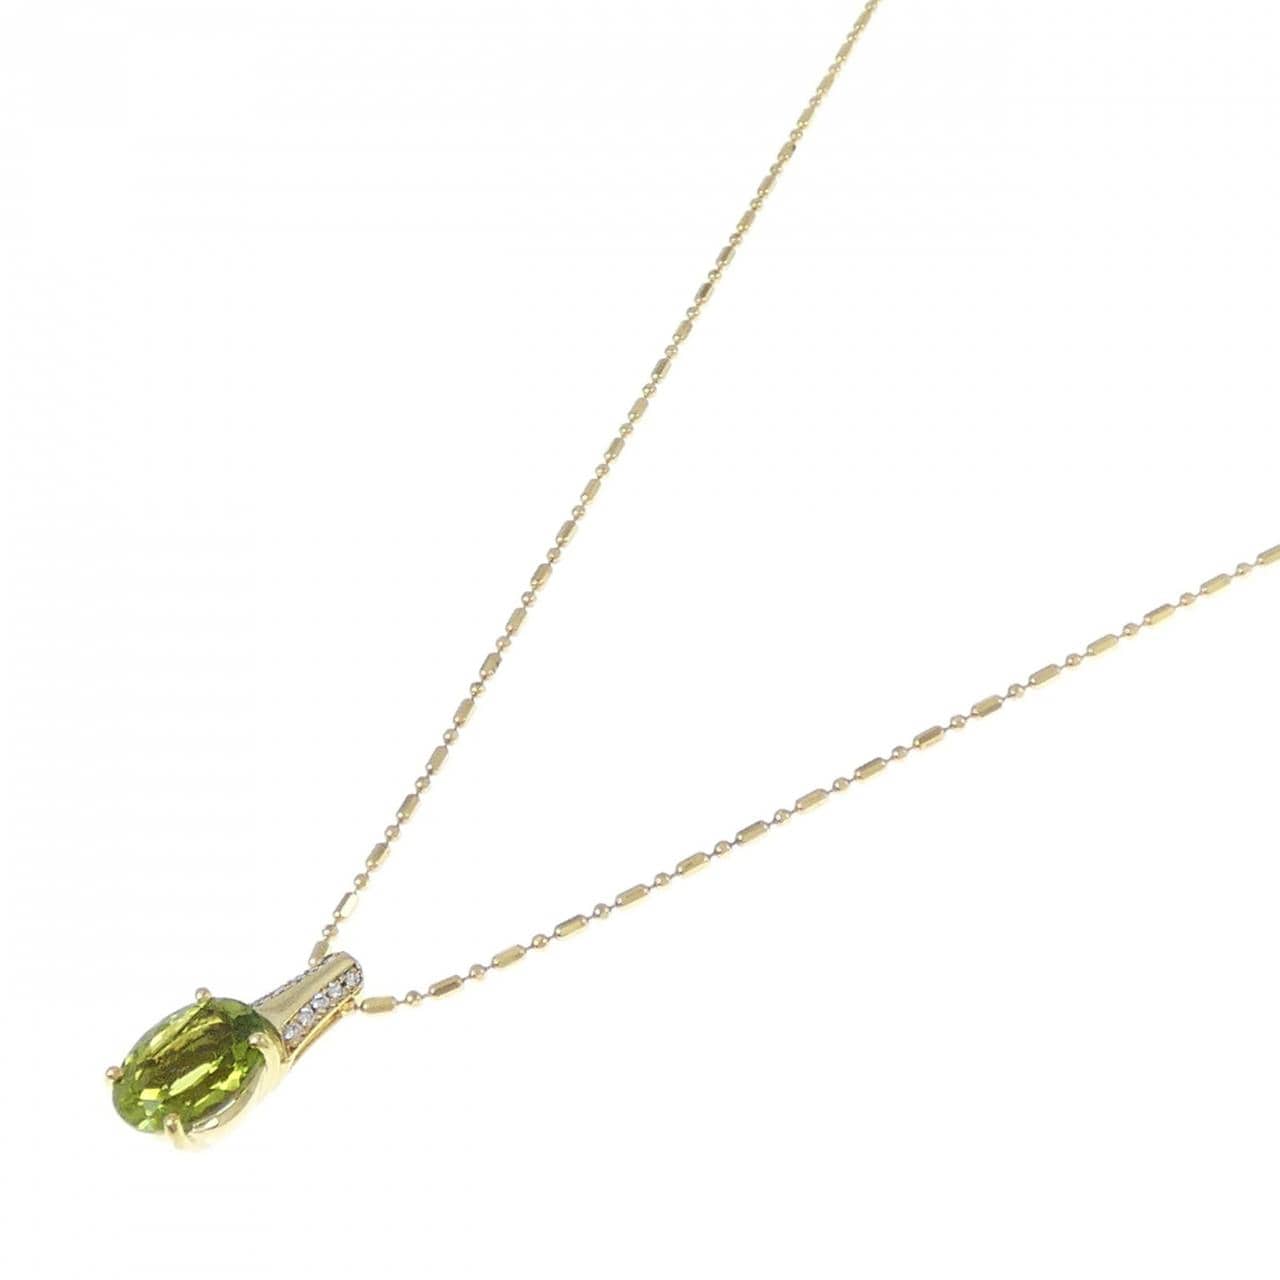 K18YG Peridot necklace 2.88CT